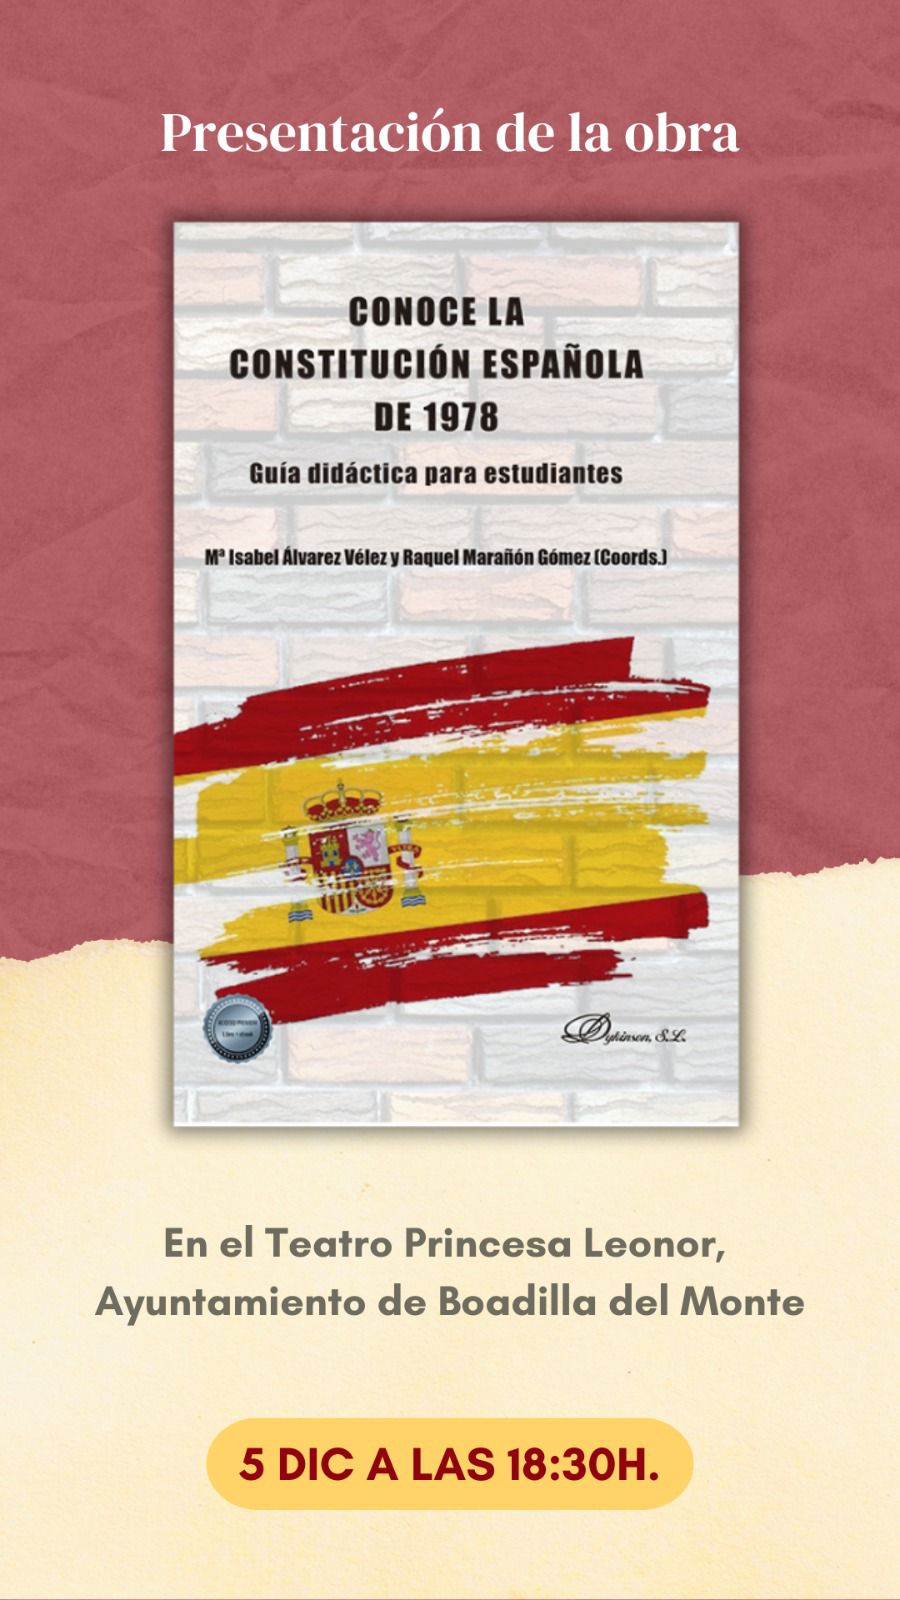 Constitución Española dykinson